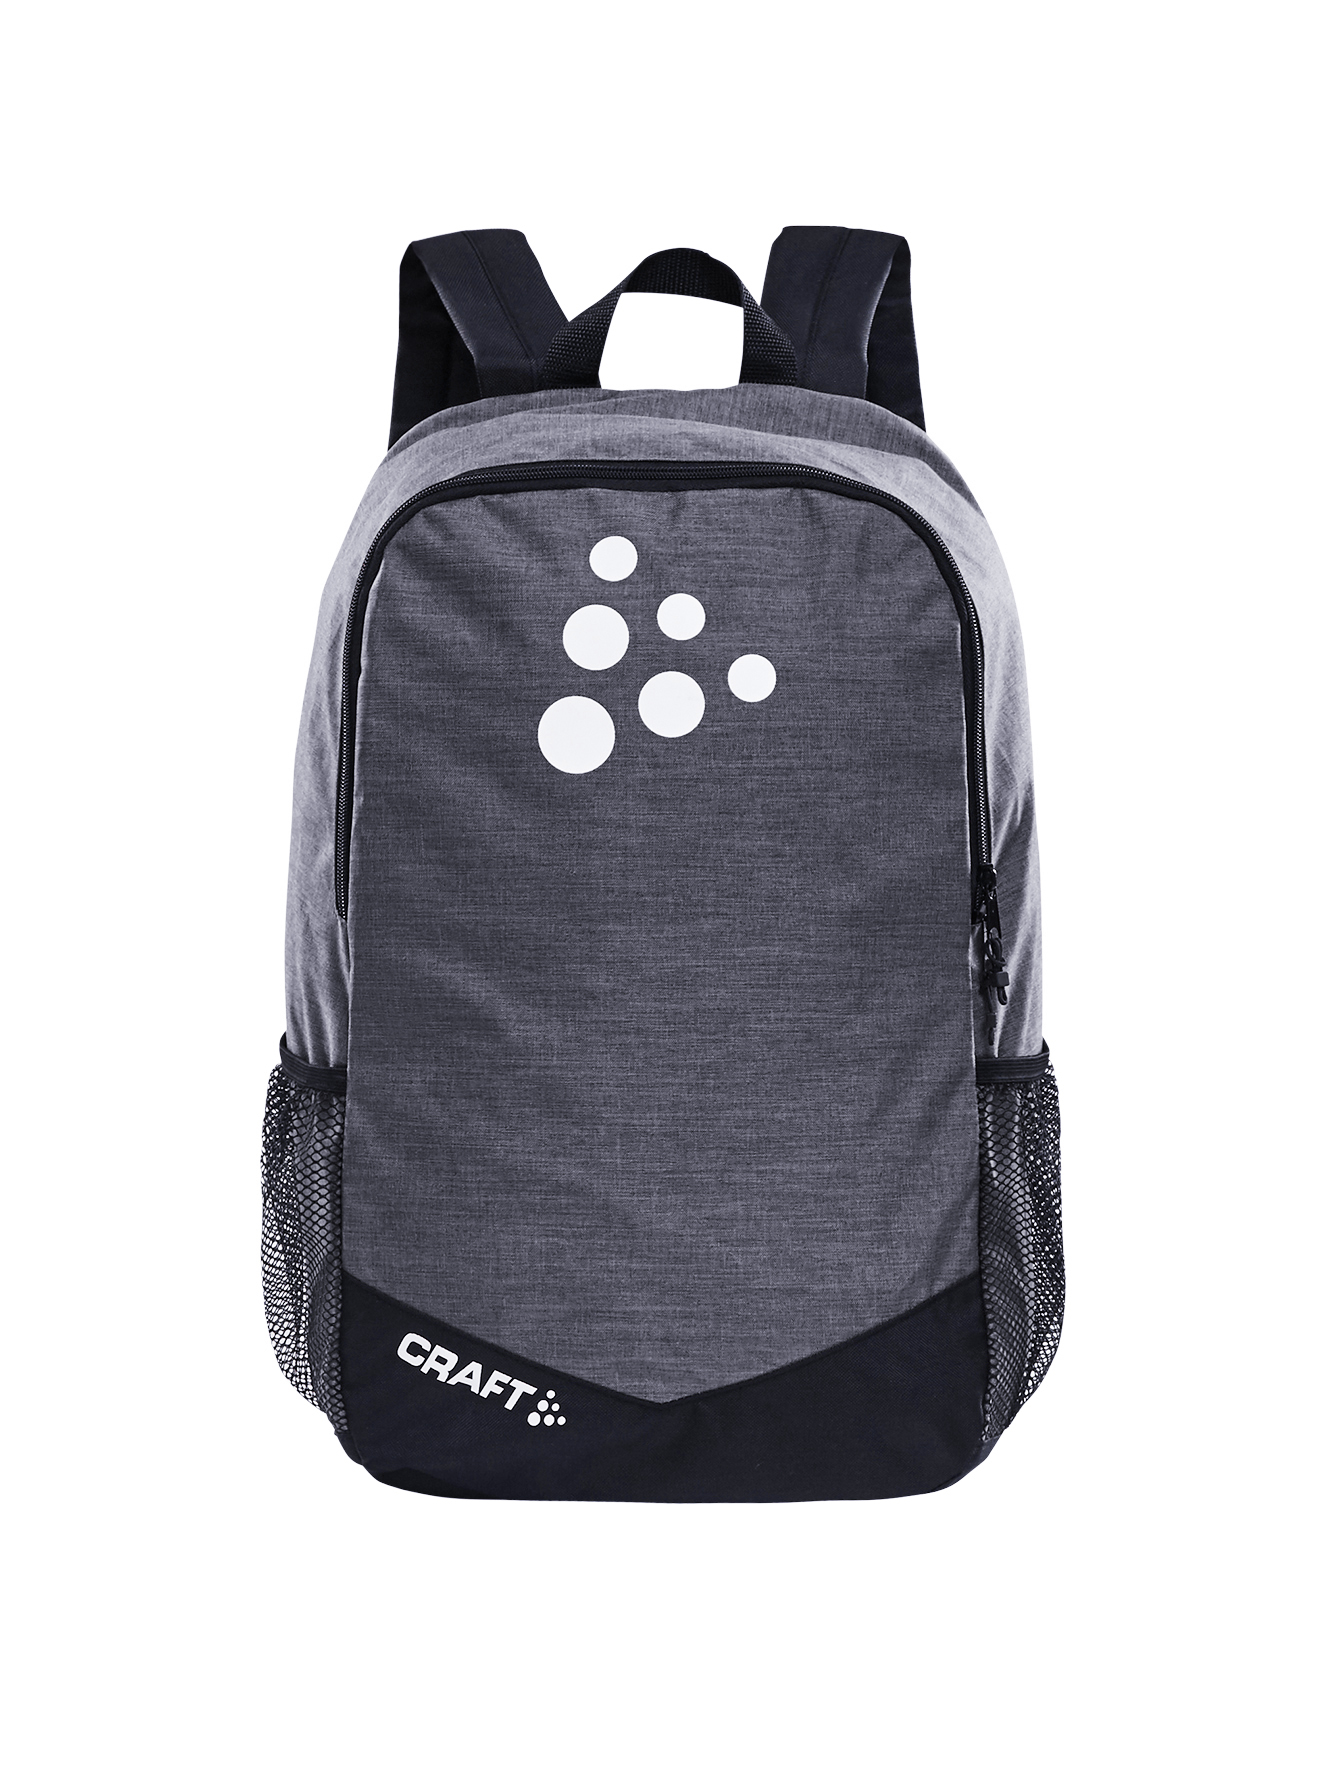 Craft SQUAD Practise Backpack DK GREY MEL / BLACK